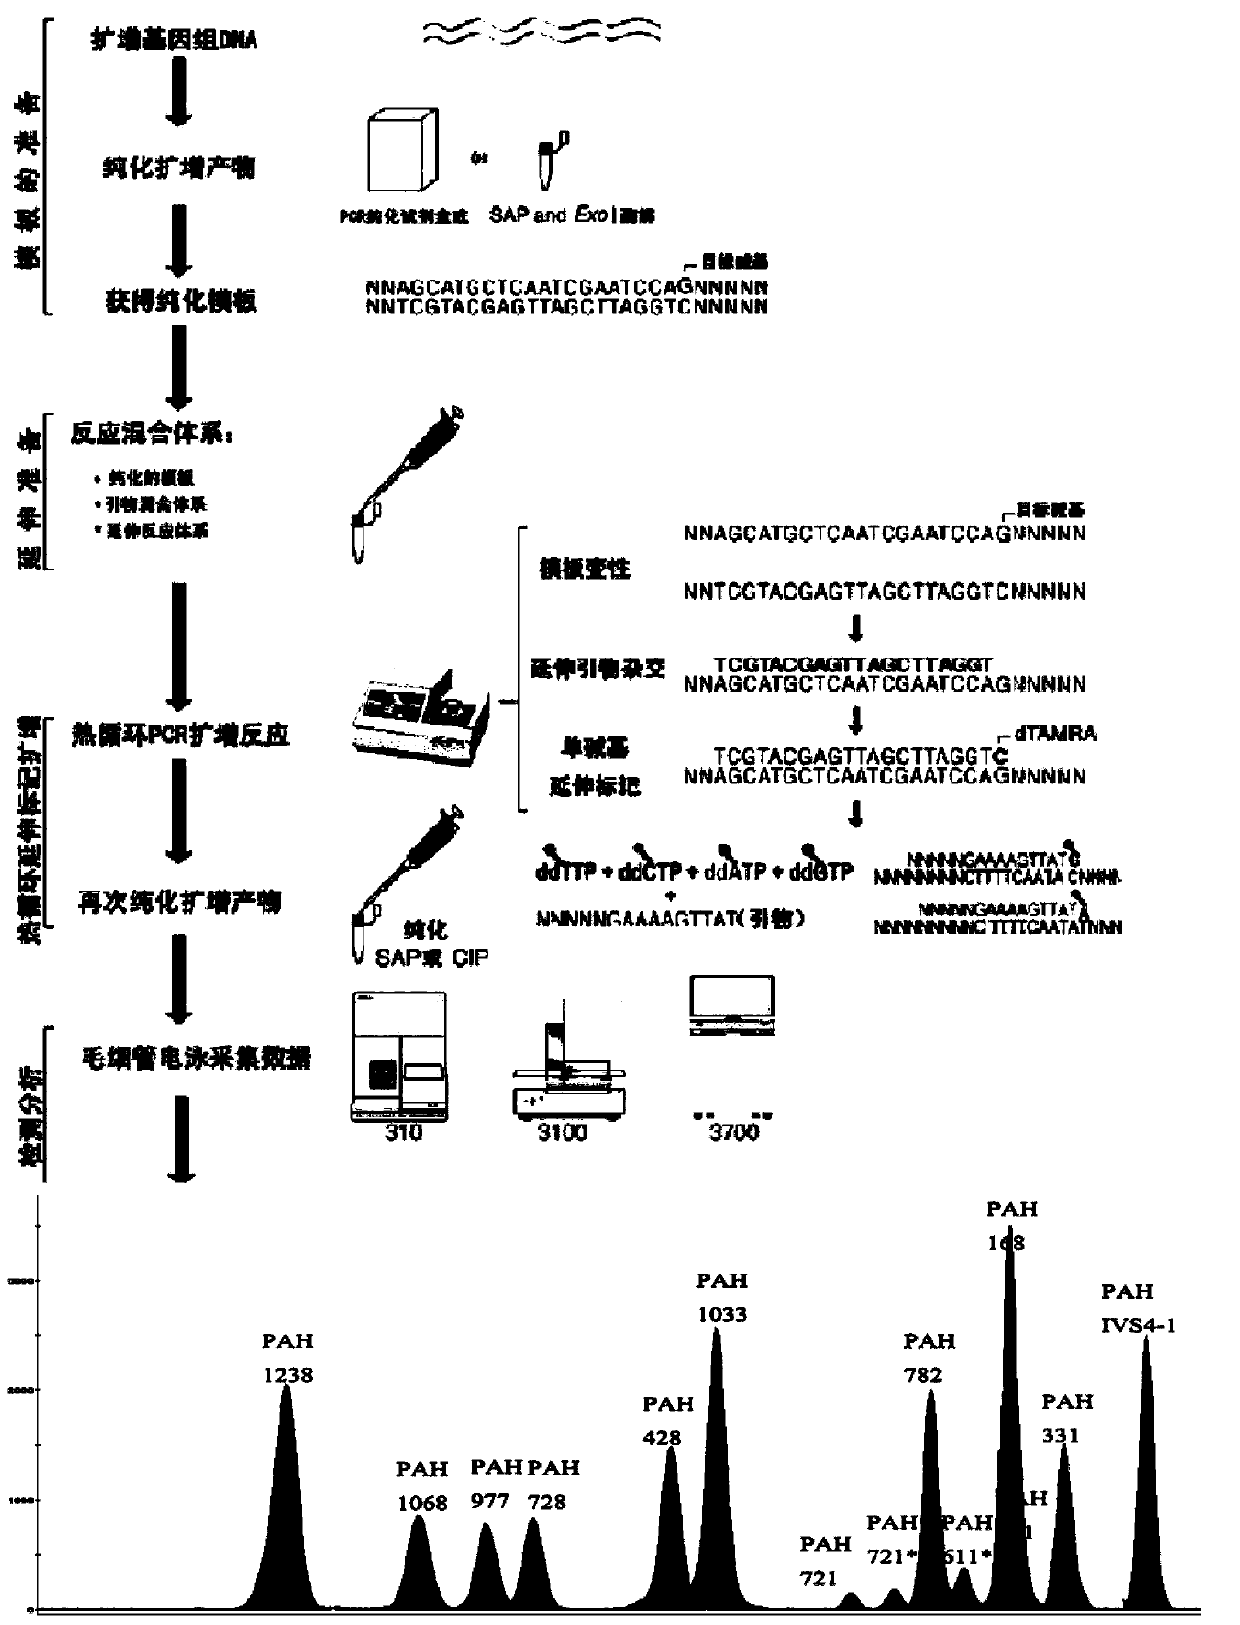 Chinese population phenylketonuria PAH (phenylalanine hydroxylase) gene screening kit